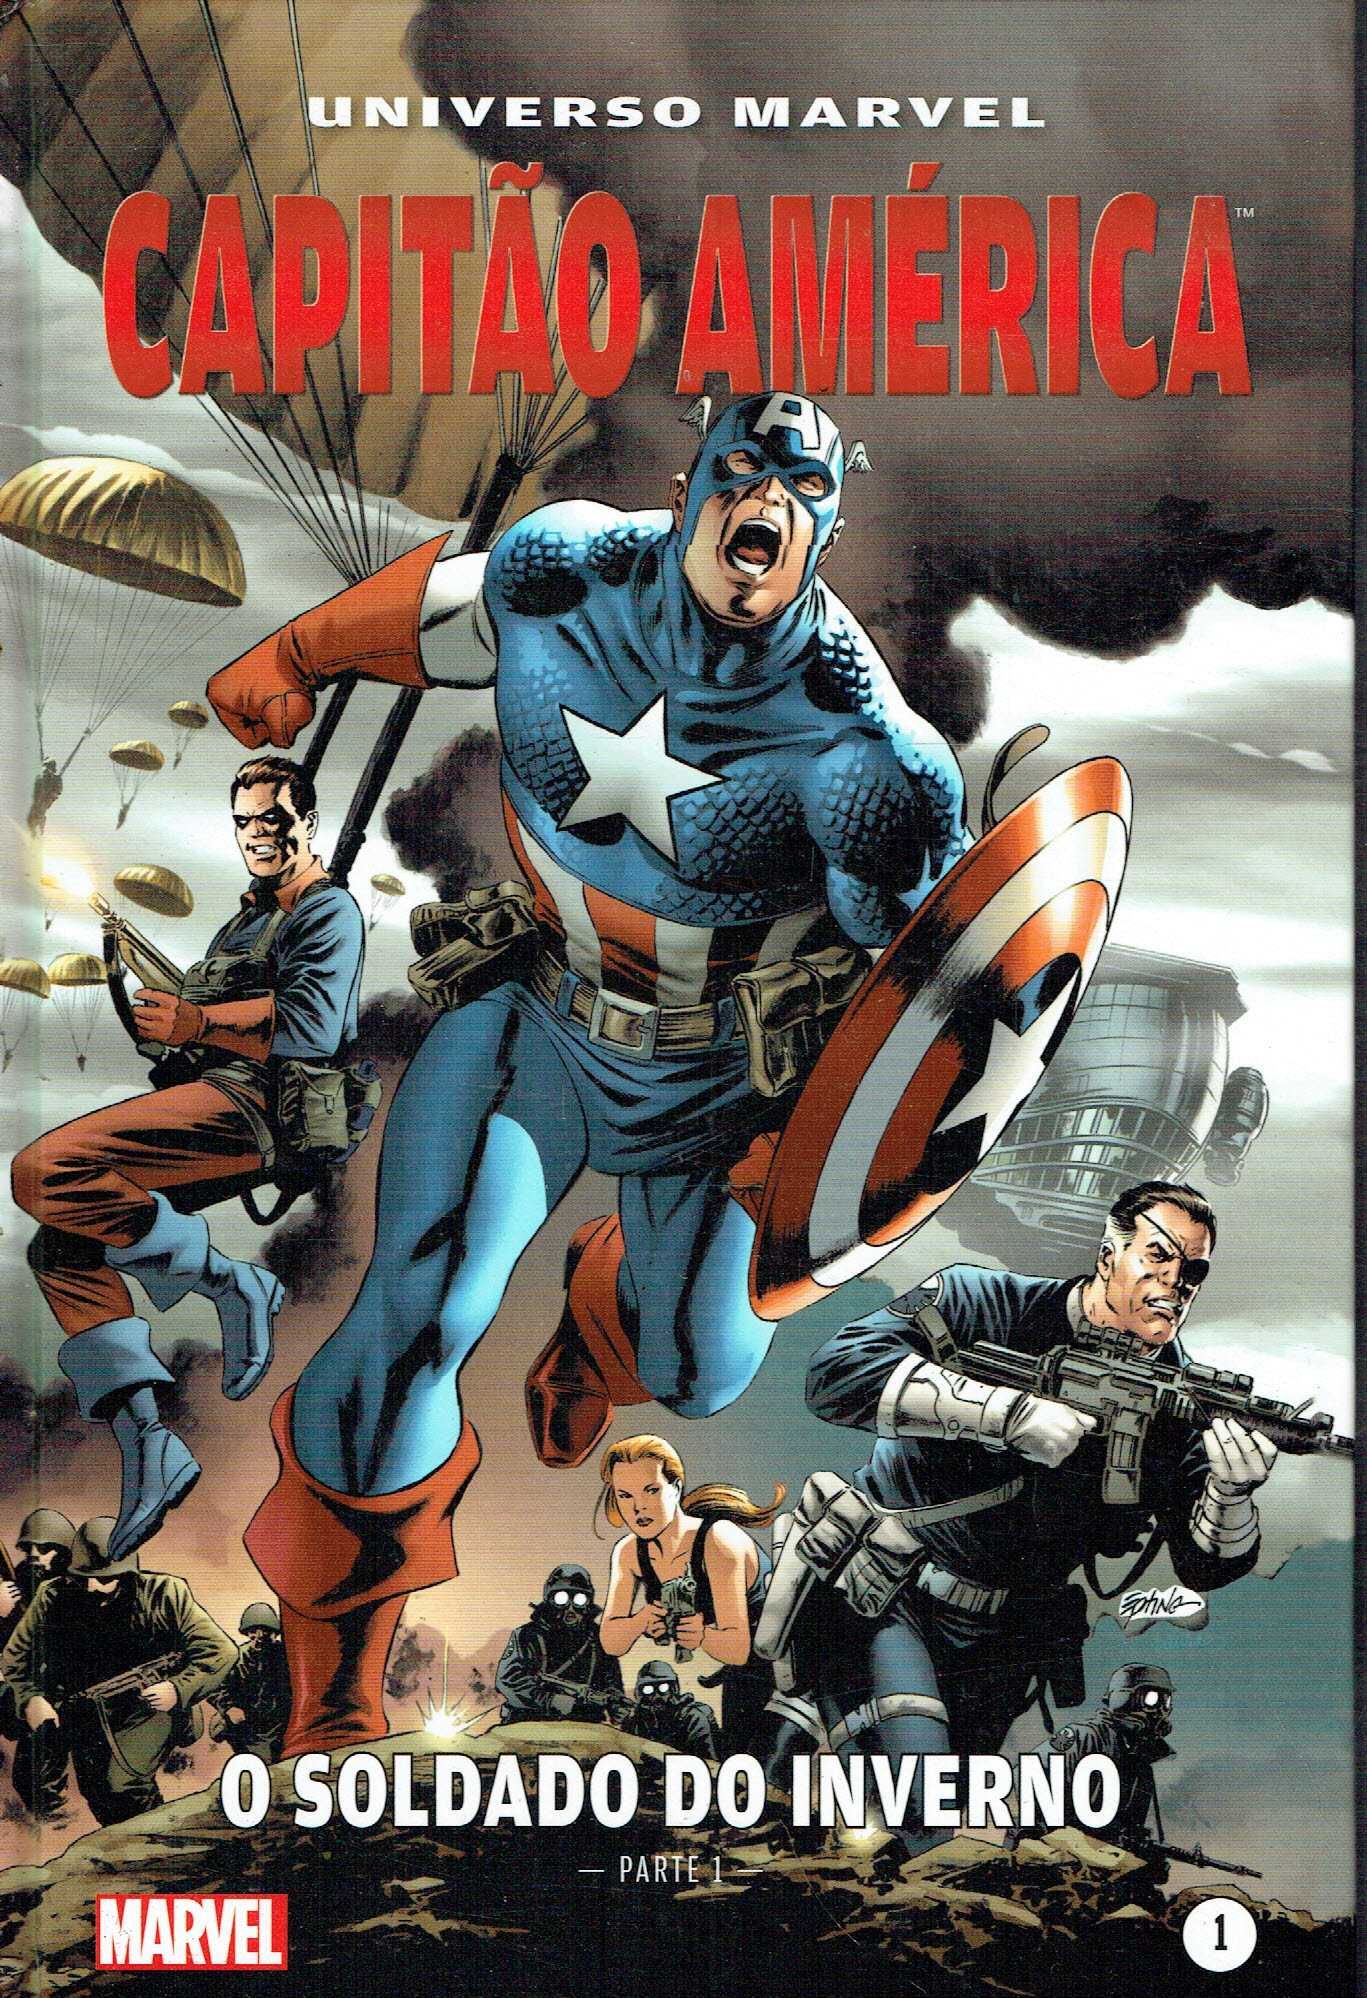 14388

Capitão América - O Soldado do Inverno
Parte 1